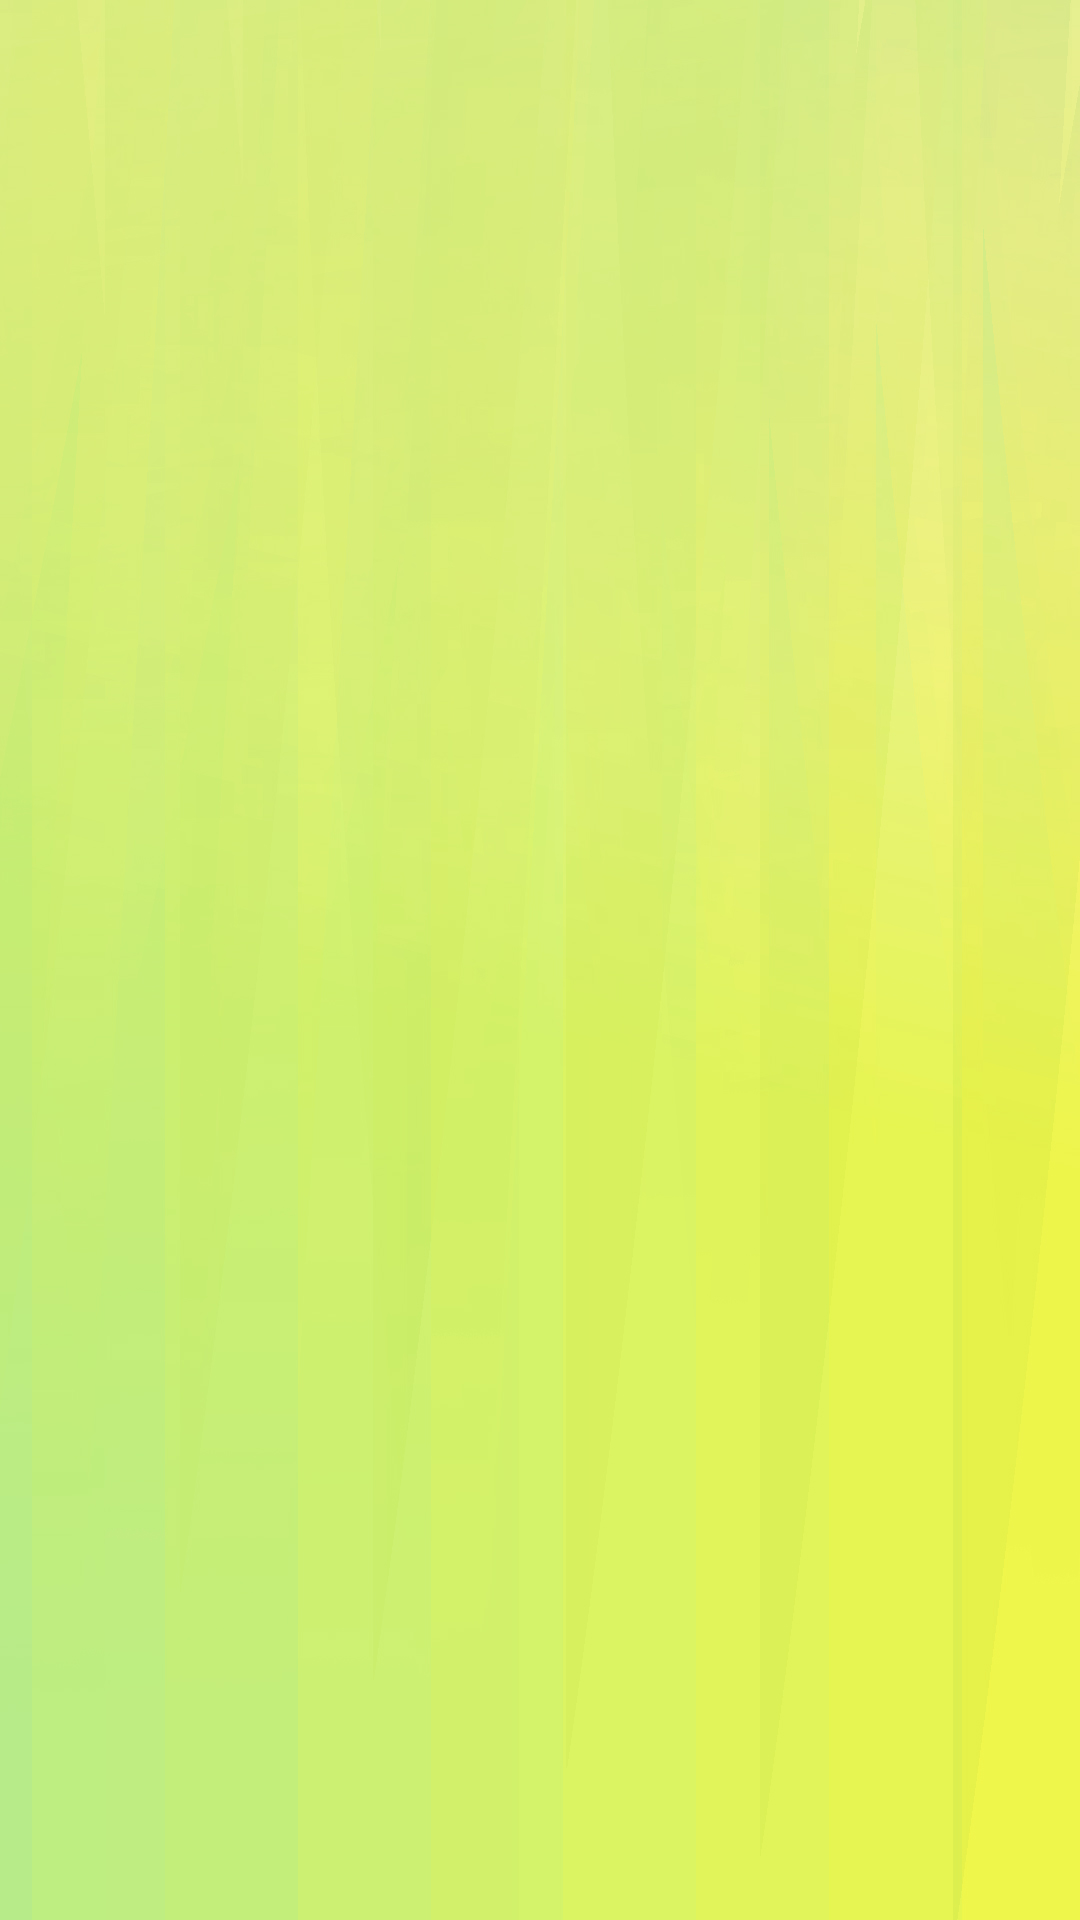 矢絣 壁紙 黄緑 無料イラスト素材 素材ラボ